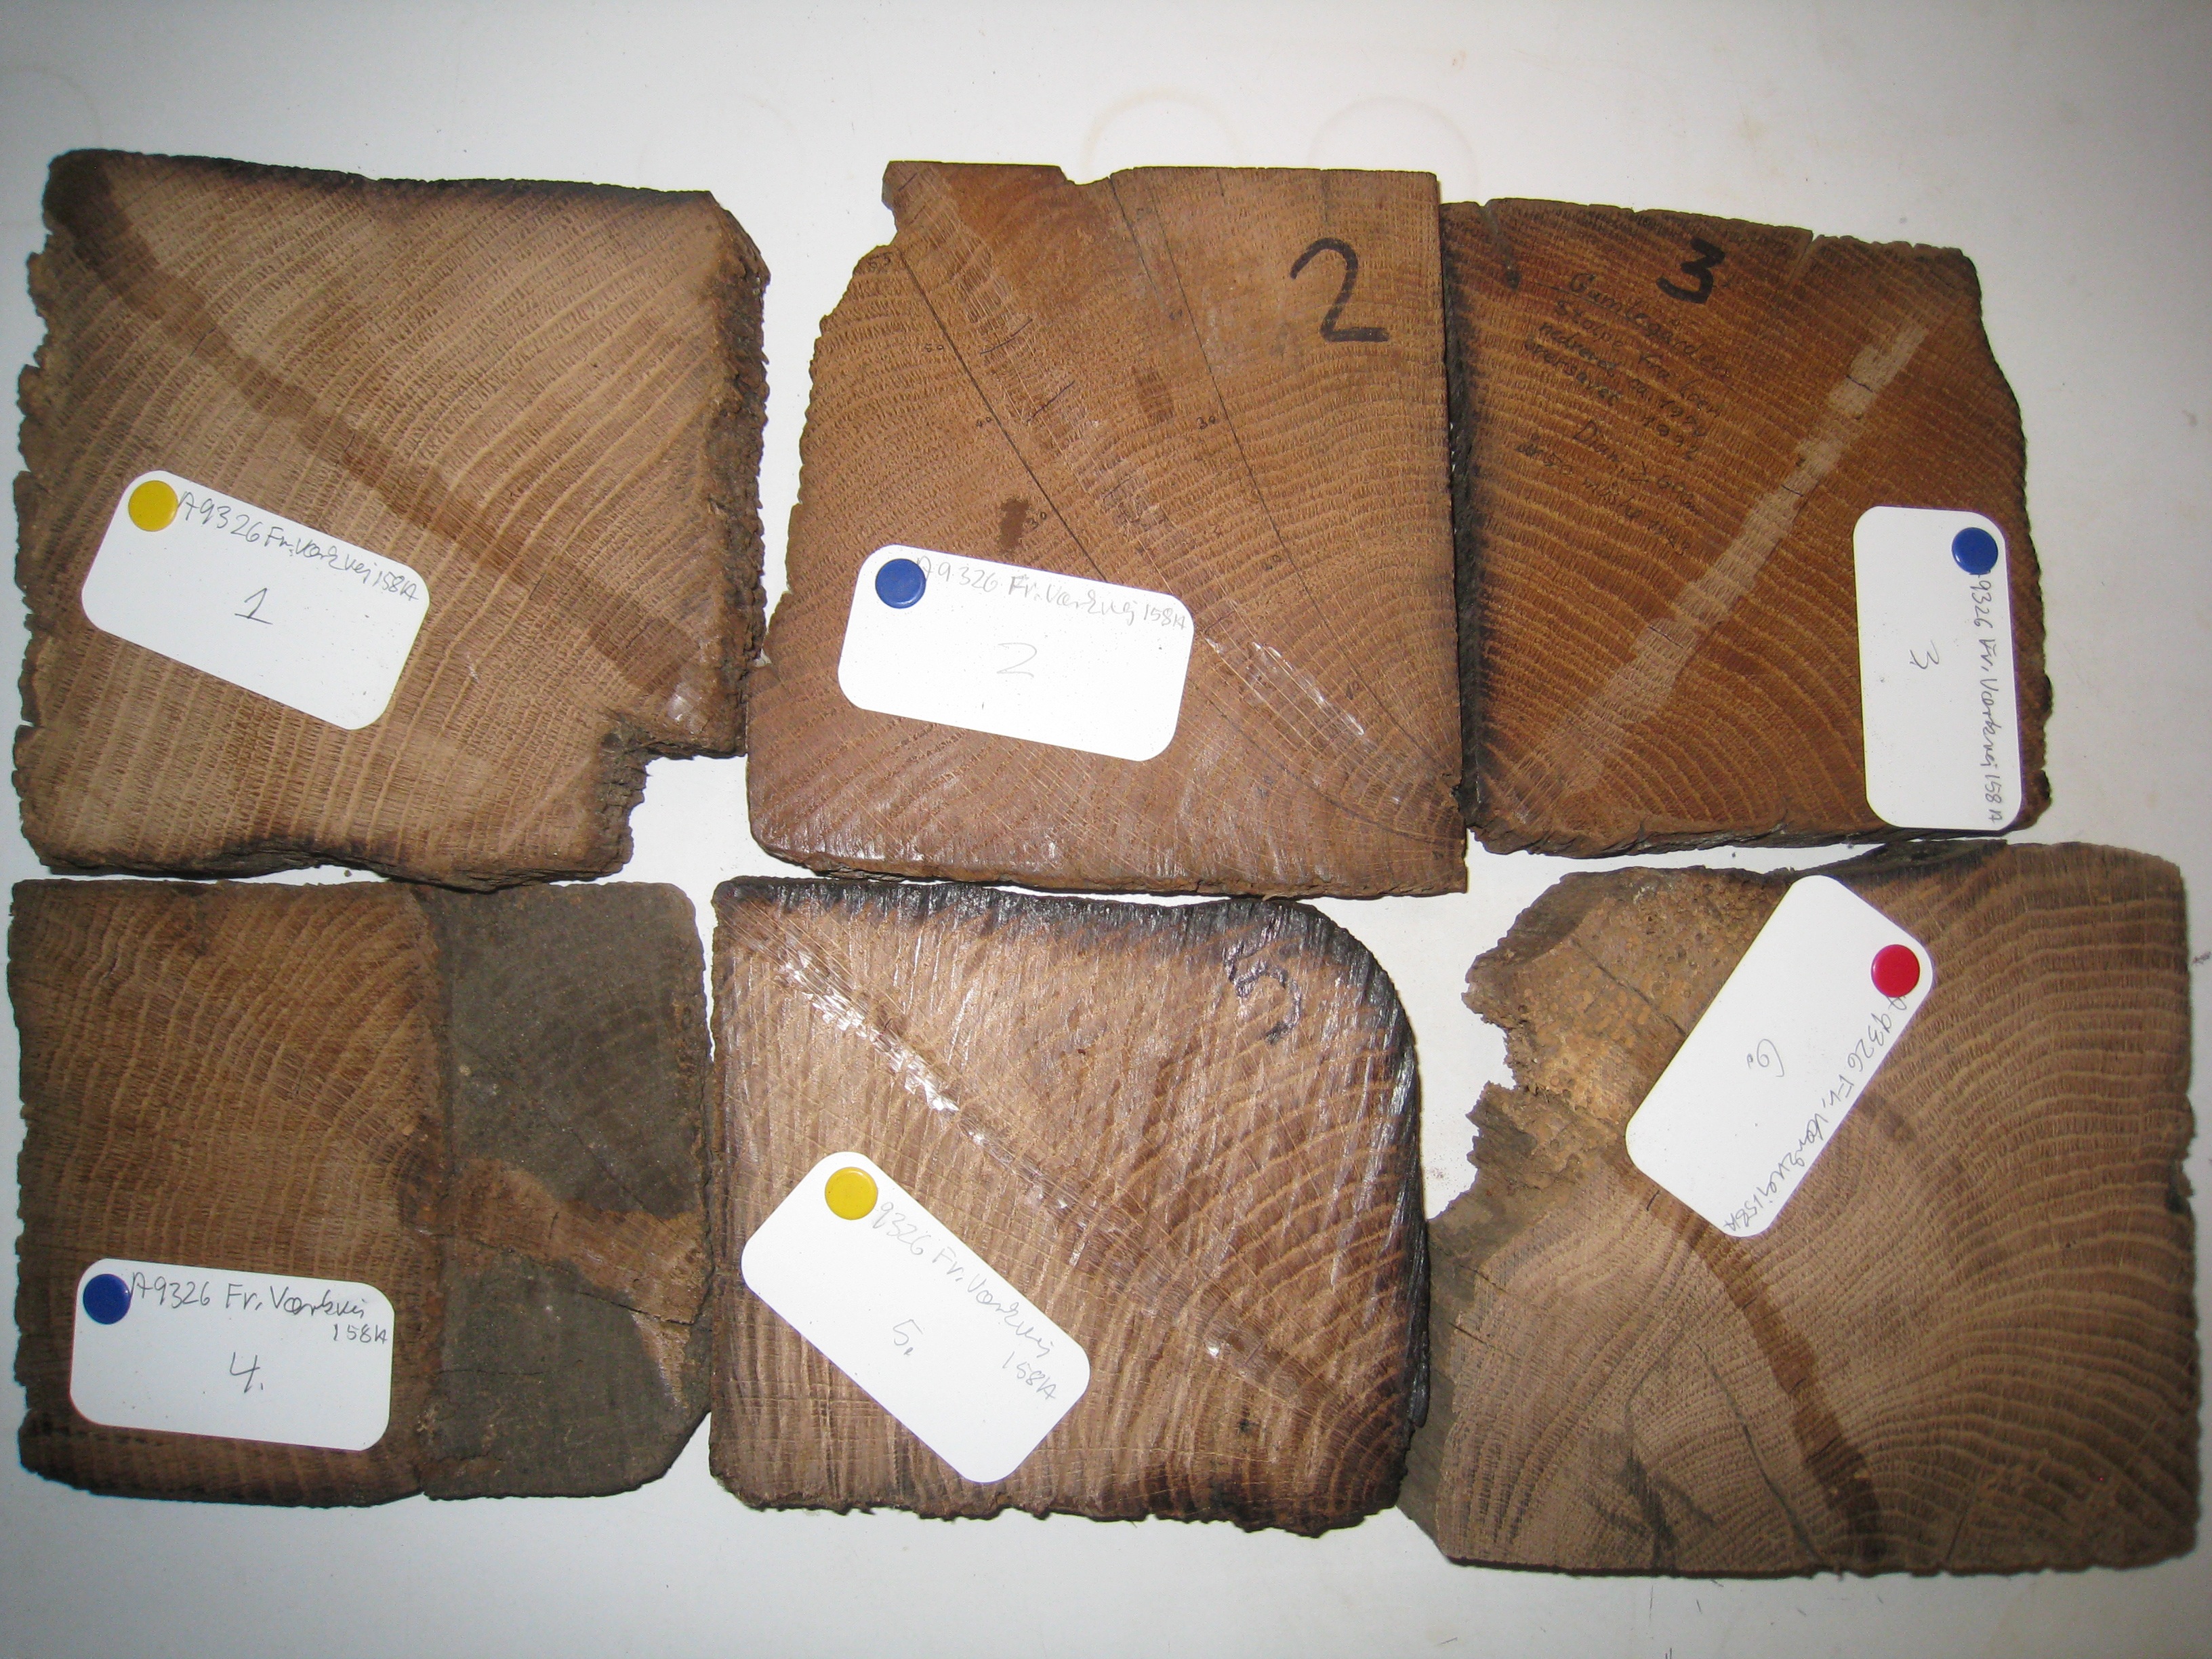 MILJØARKÆOLOGI & MATERIALEFORSKNING DENDROKRONOLOGISK LABORATORIUM Dendrokronologisk undersøgelse af tømmer fra